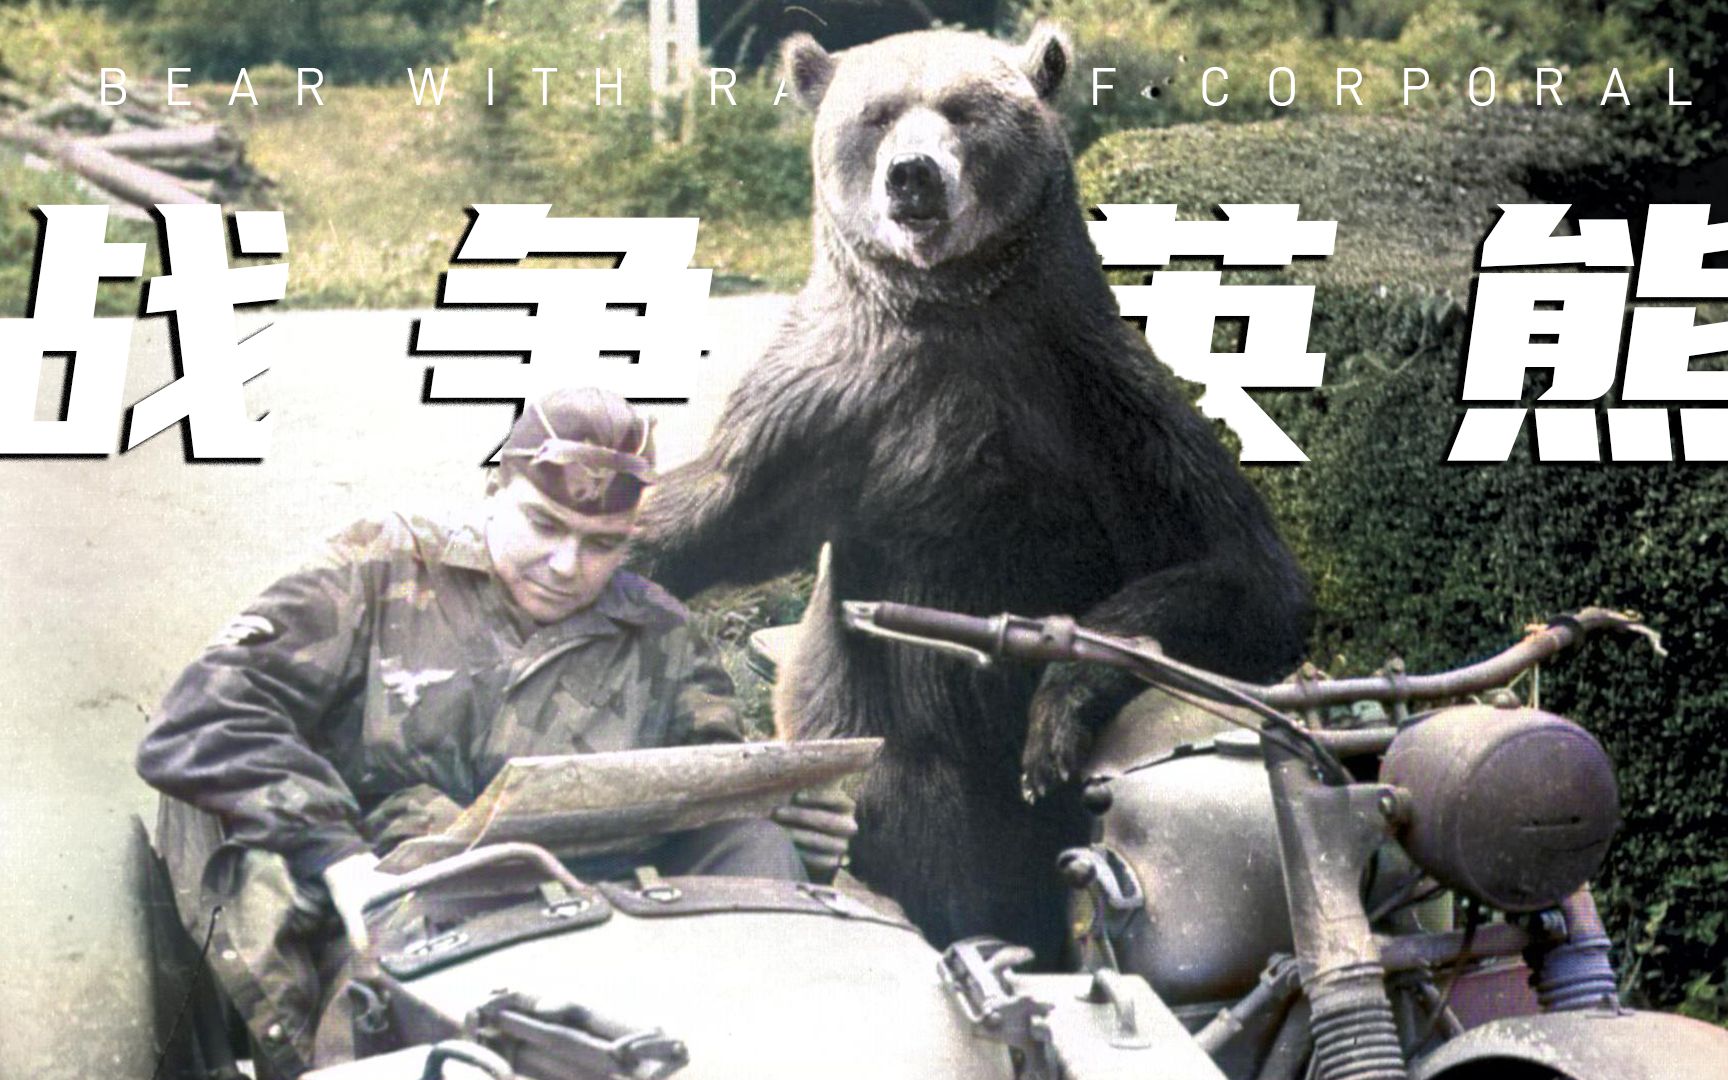 沃铁战斗熊logo图片